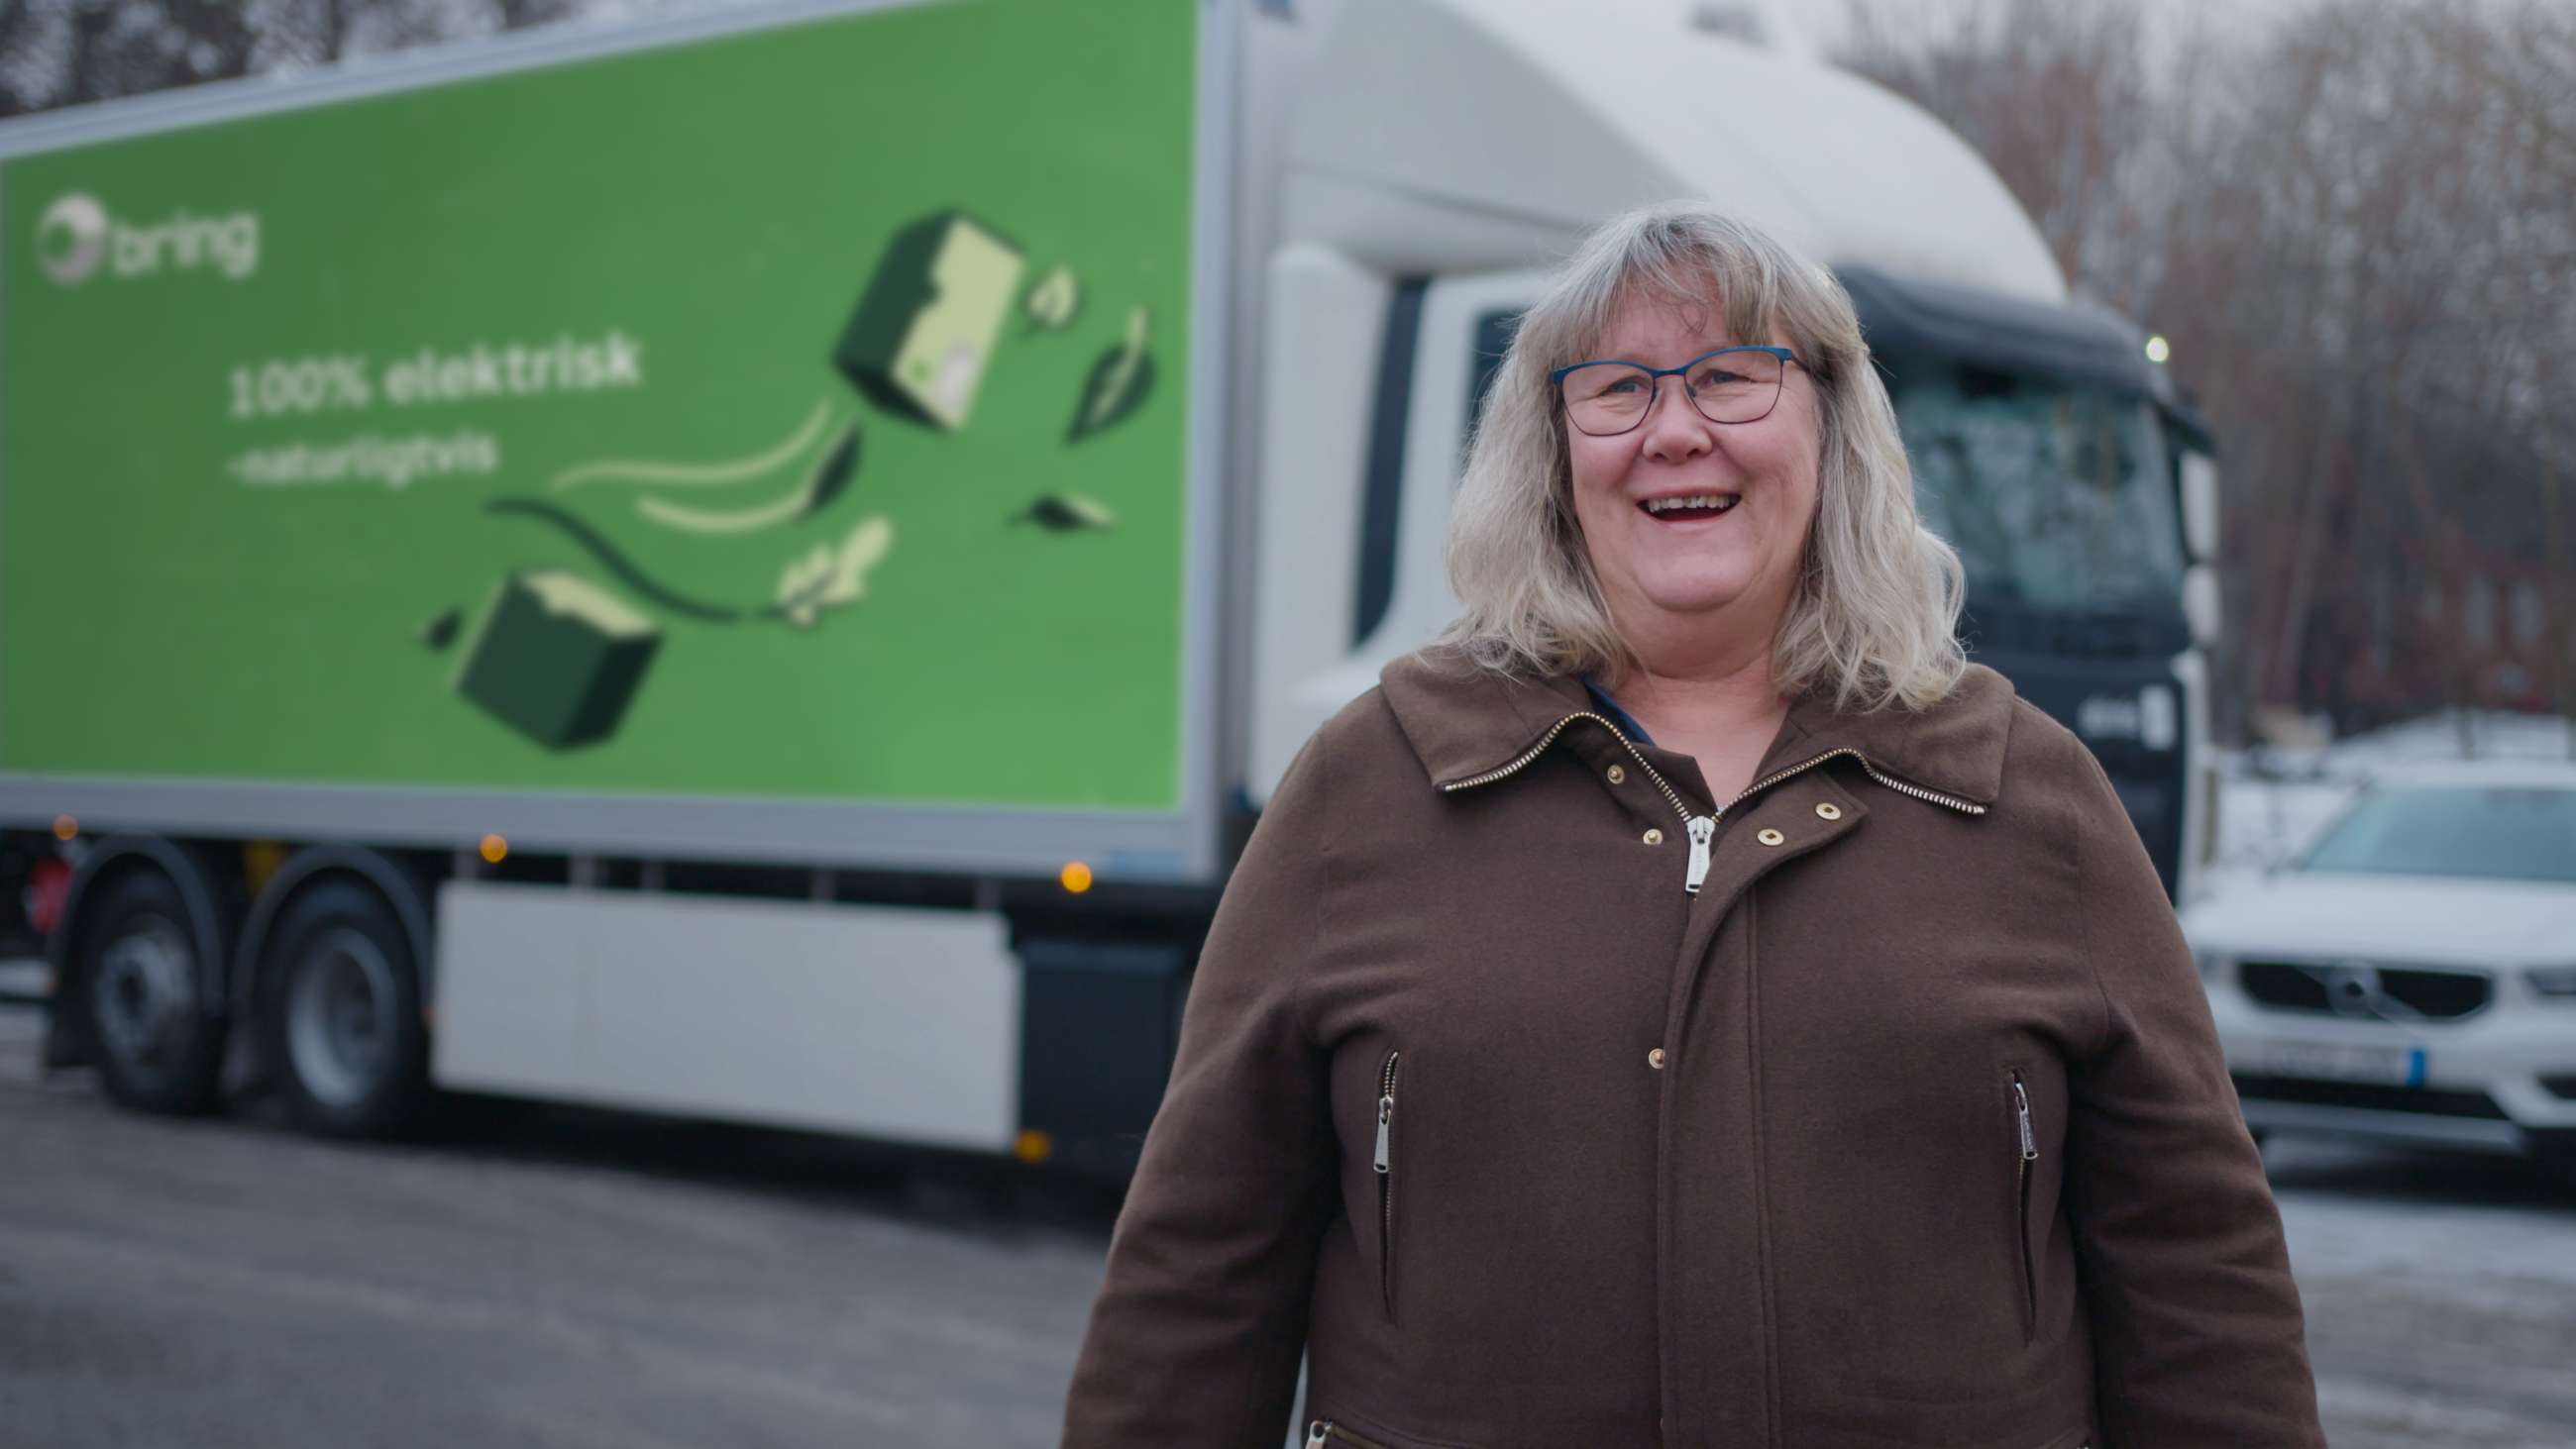 Catherine Löfquist, hållbarhetschef på Bring, står leende framför en elektrisk Bring lastbil